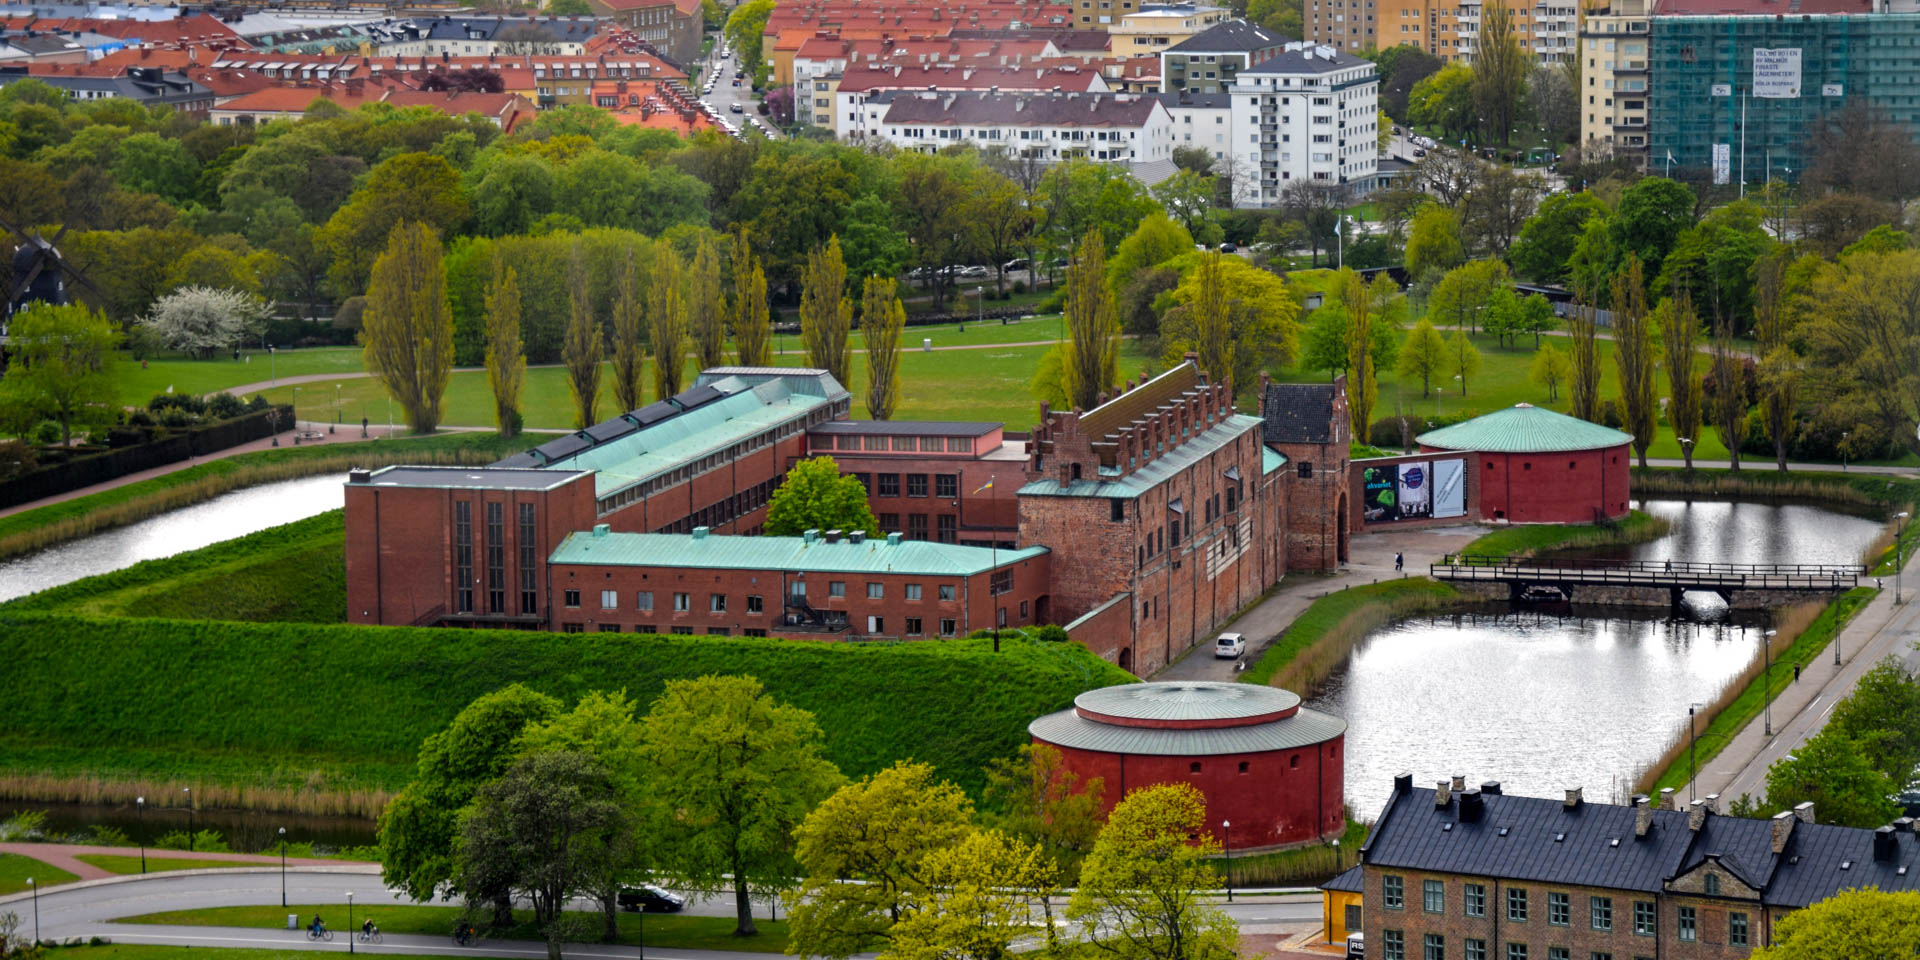 Castillo de Malmö